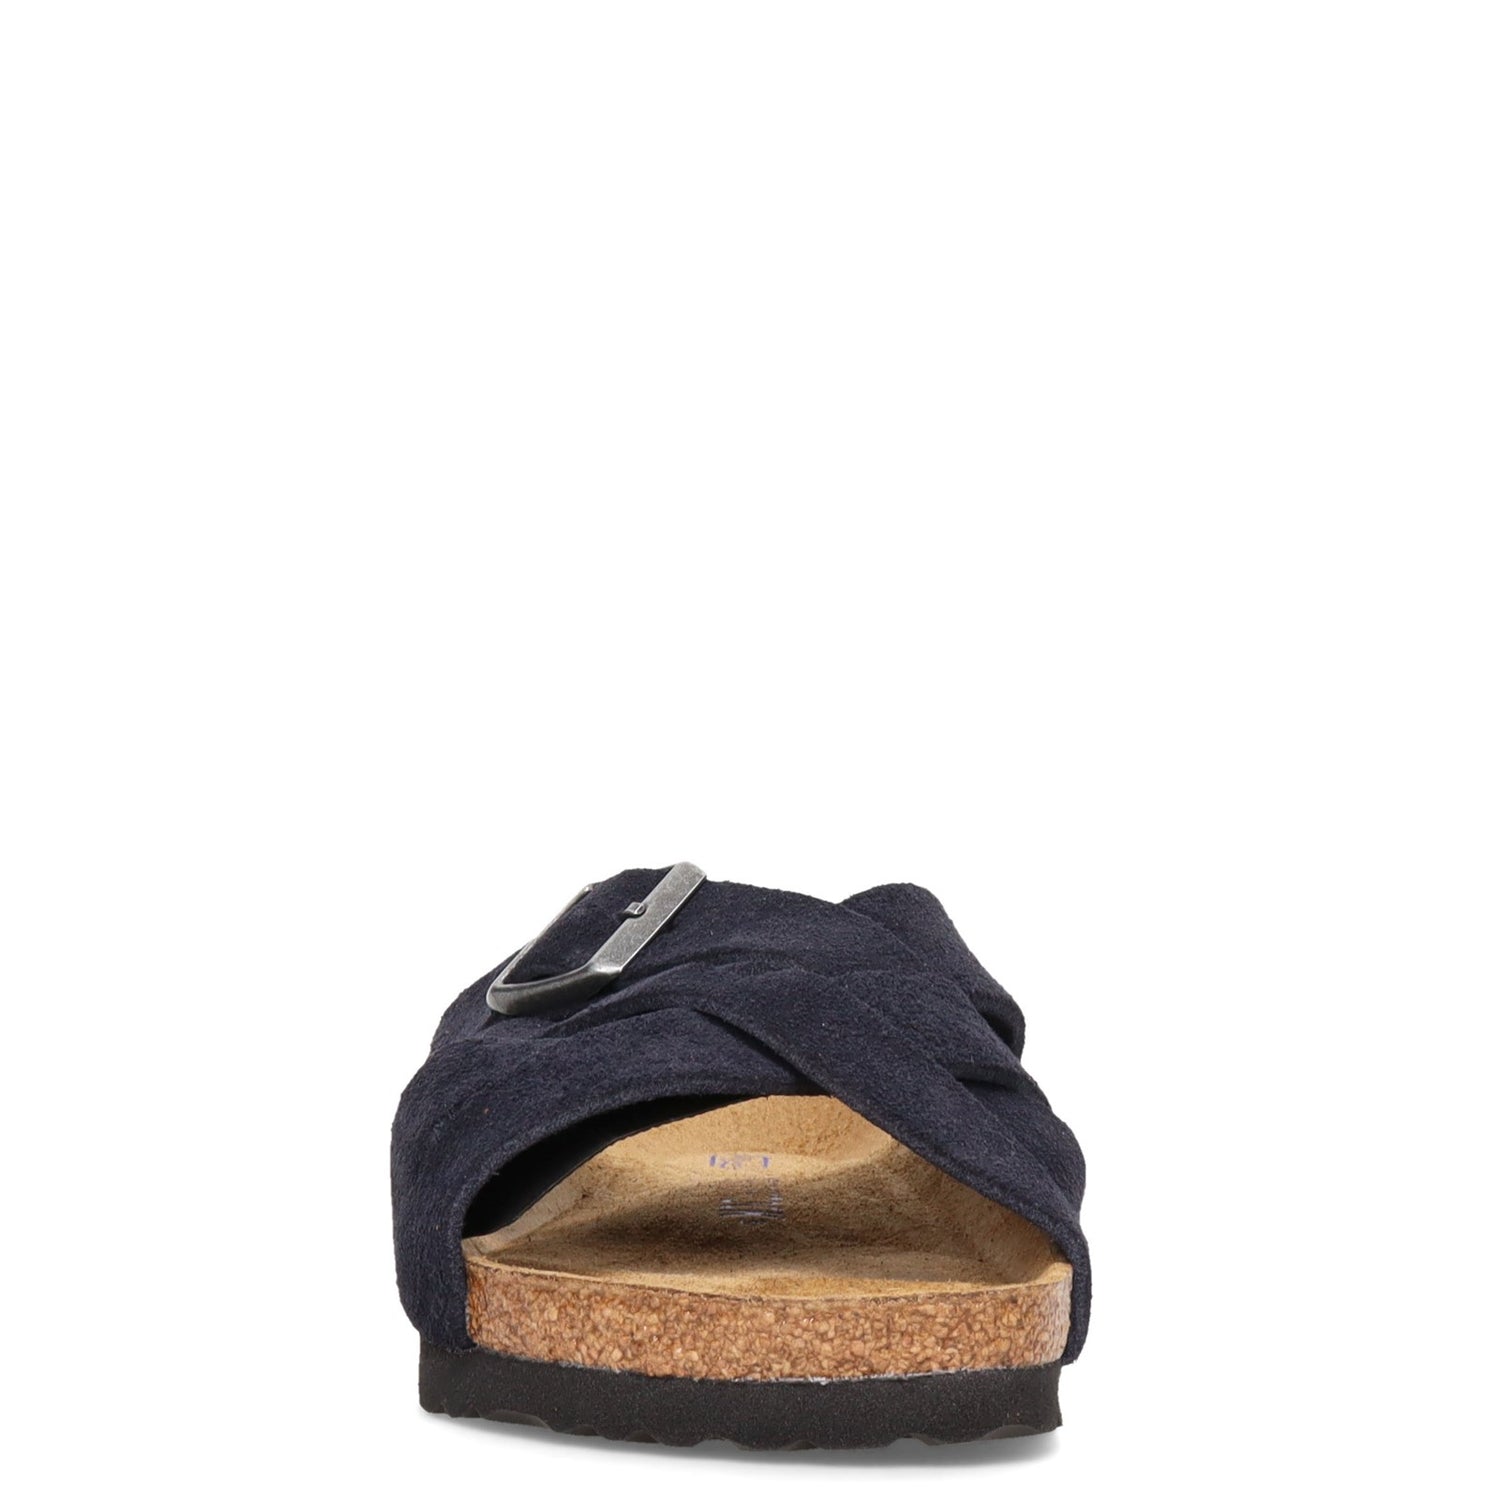 Peltz Shoes  Women's Birkenstock Lugano Sandal - Narrow Width MIDNIGHT 1020 936 N